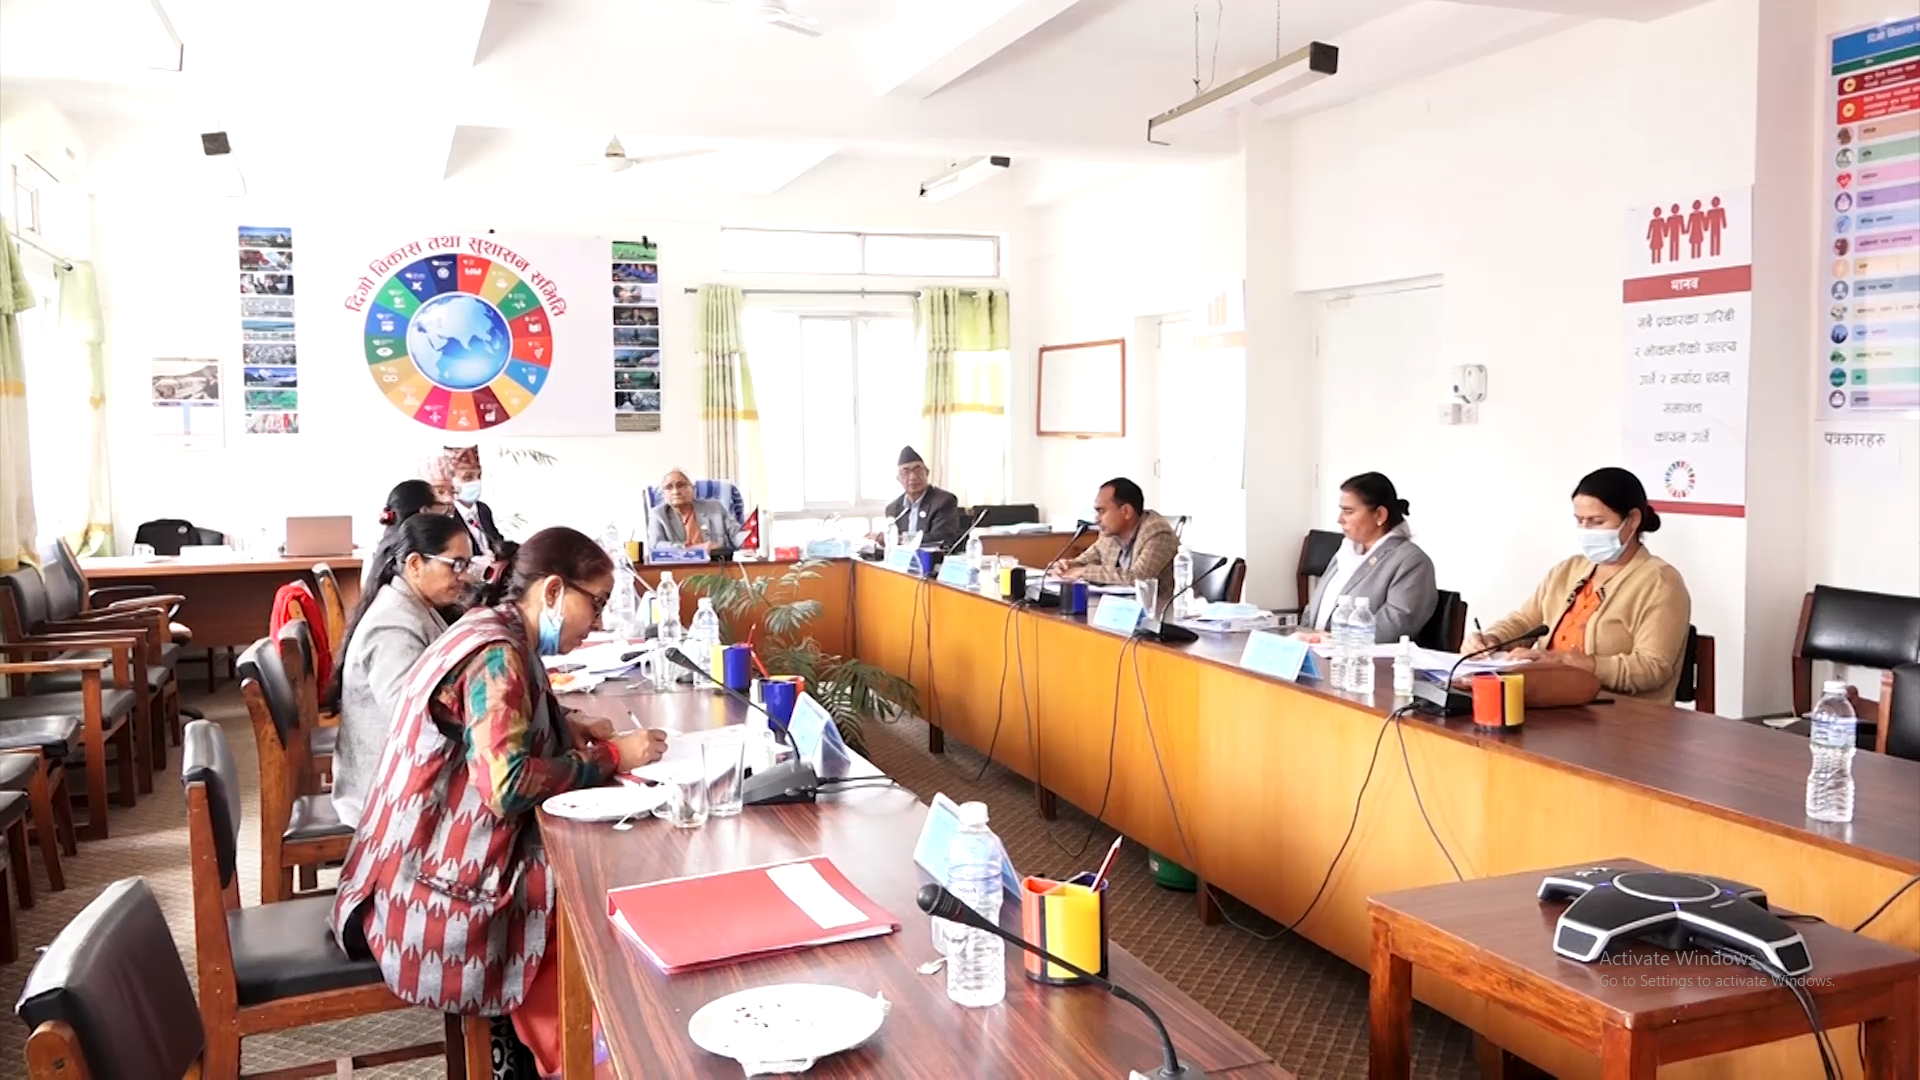 थारु समुदाय र दिगो विकासका लक्ष्यहरु